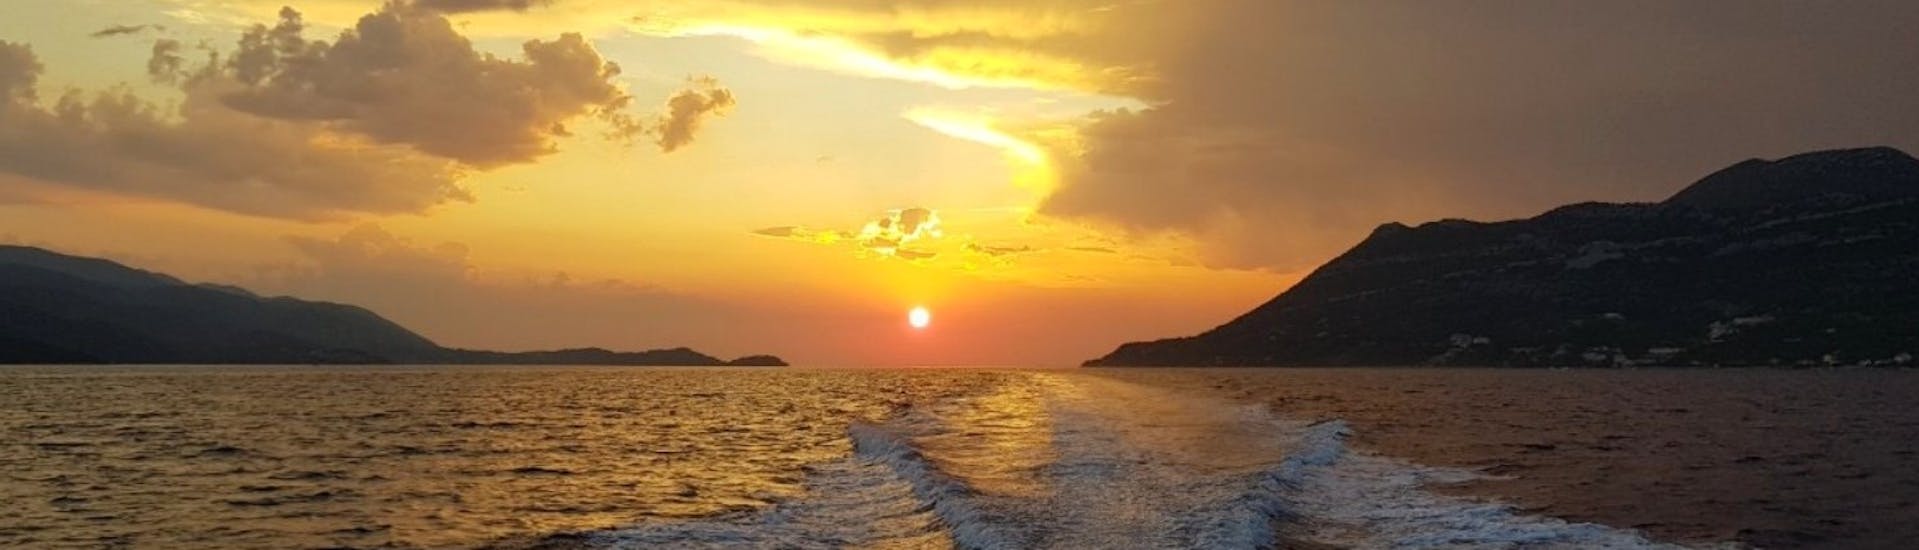 Zonsondergang tijdens de privé cruise bij zonsondergang van Dubrovnik naar Daska Eiland georganiseerd door Snooky Tours Dubrovnik.